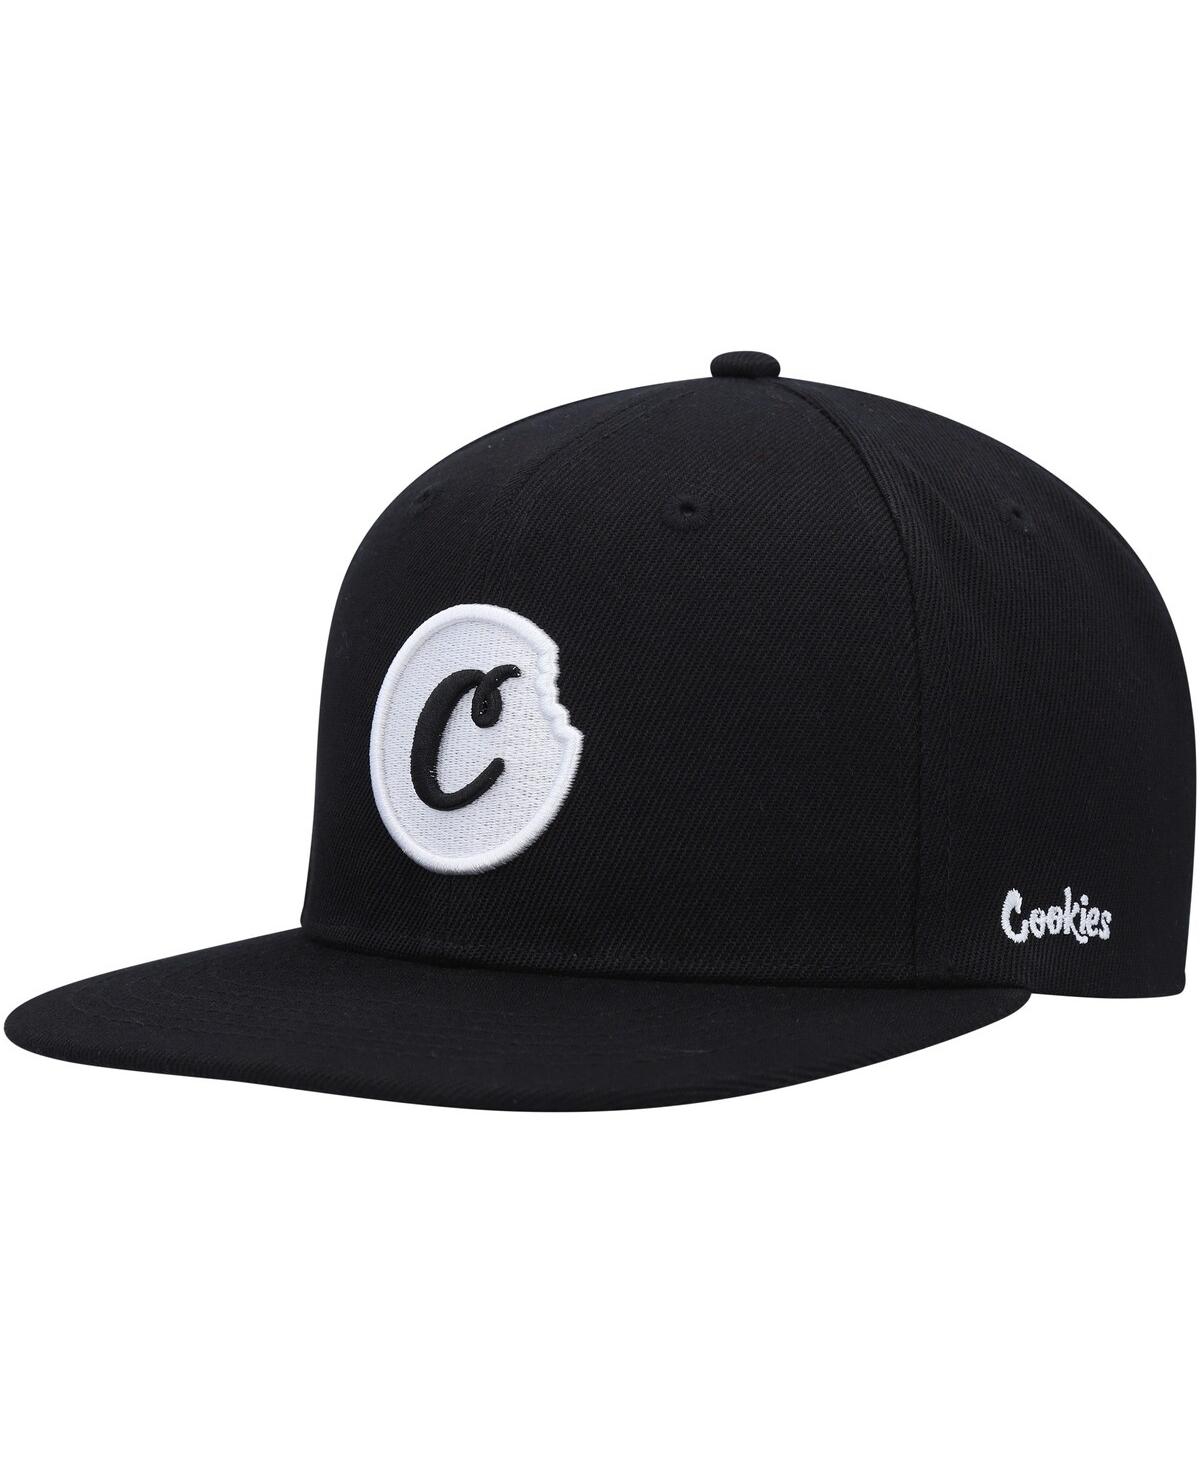 Cookies Men's  Black C-bite Snapback Hat